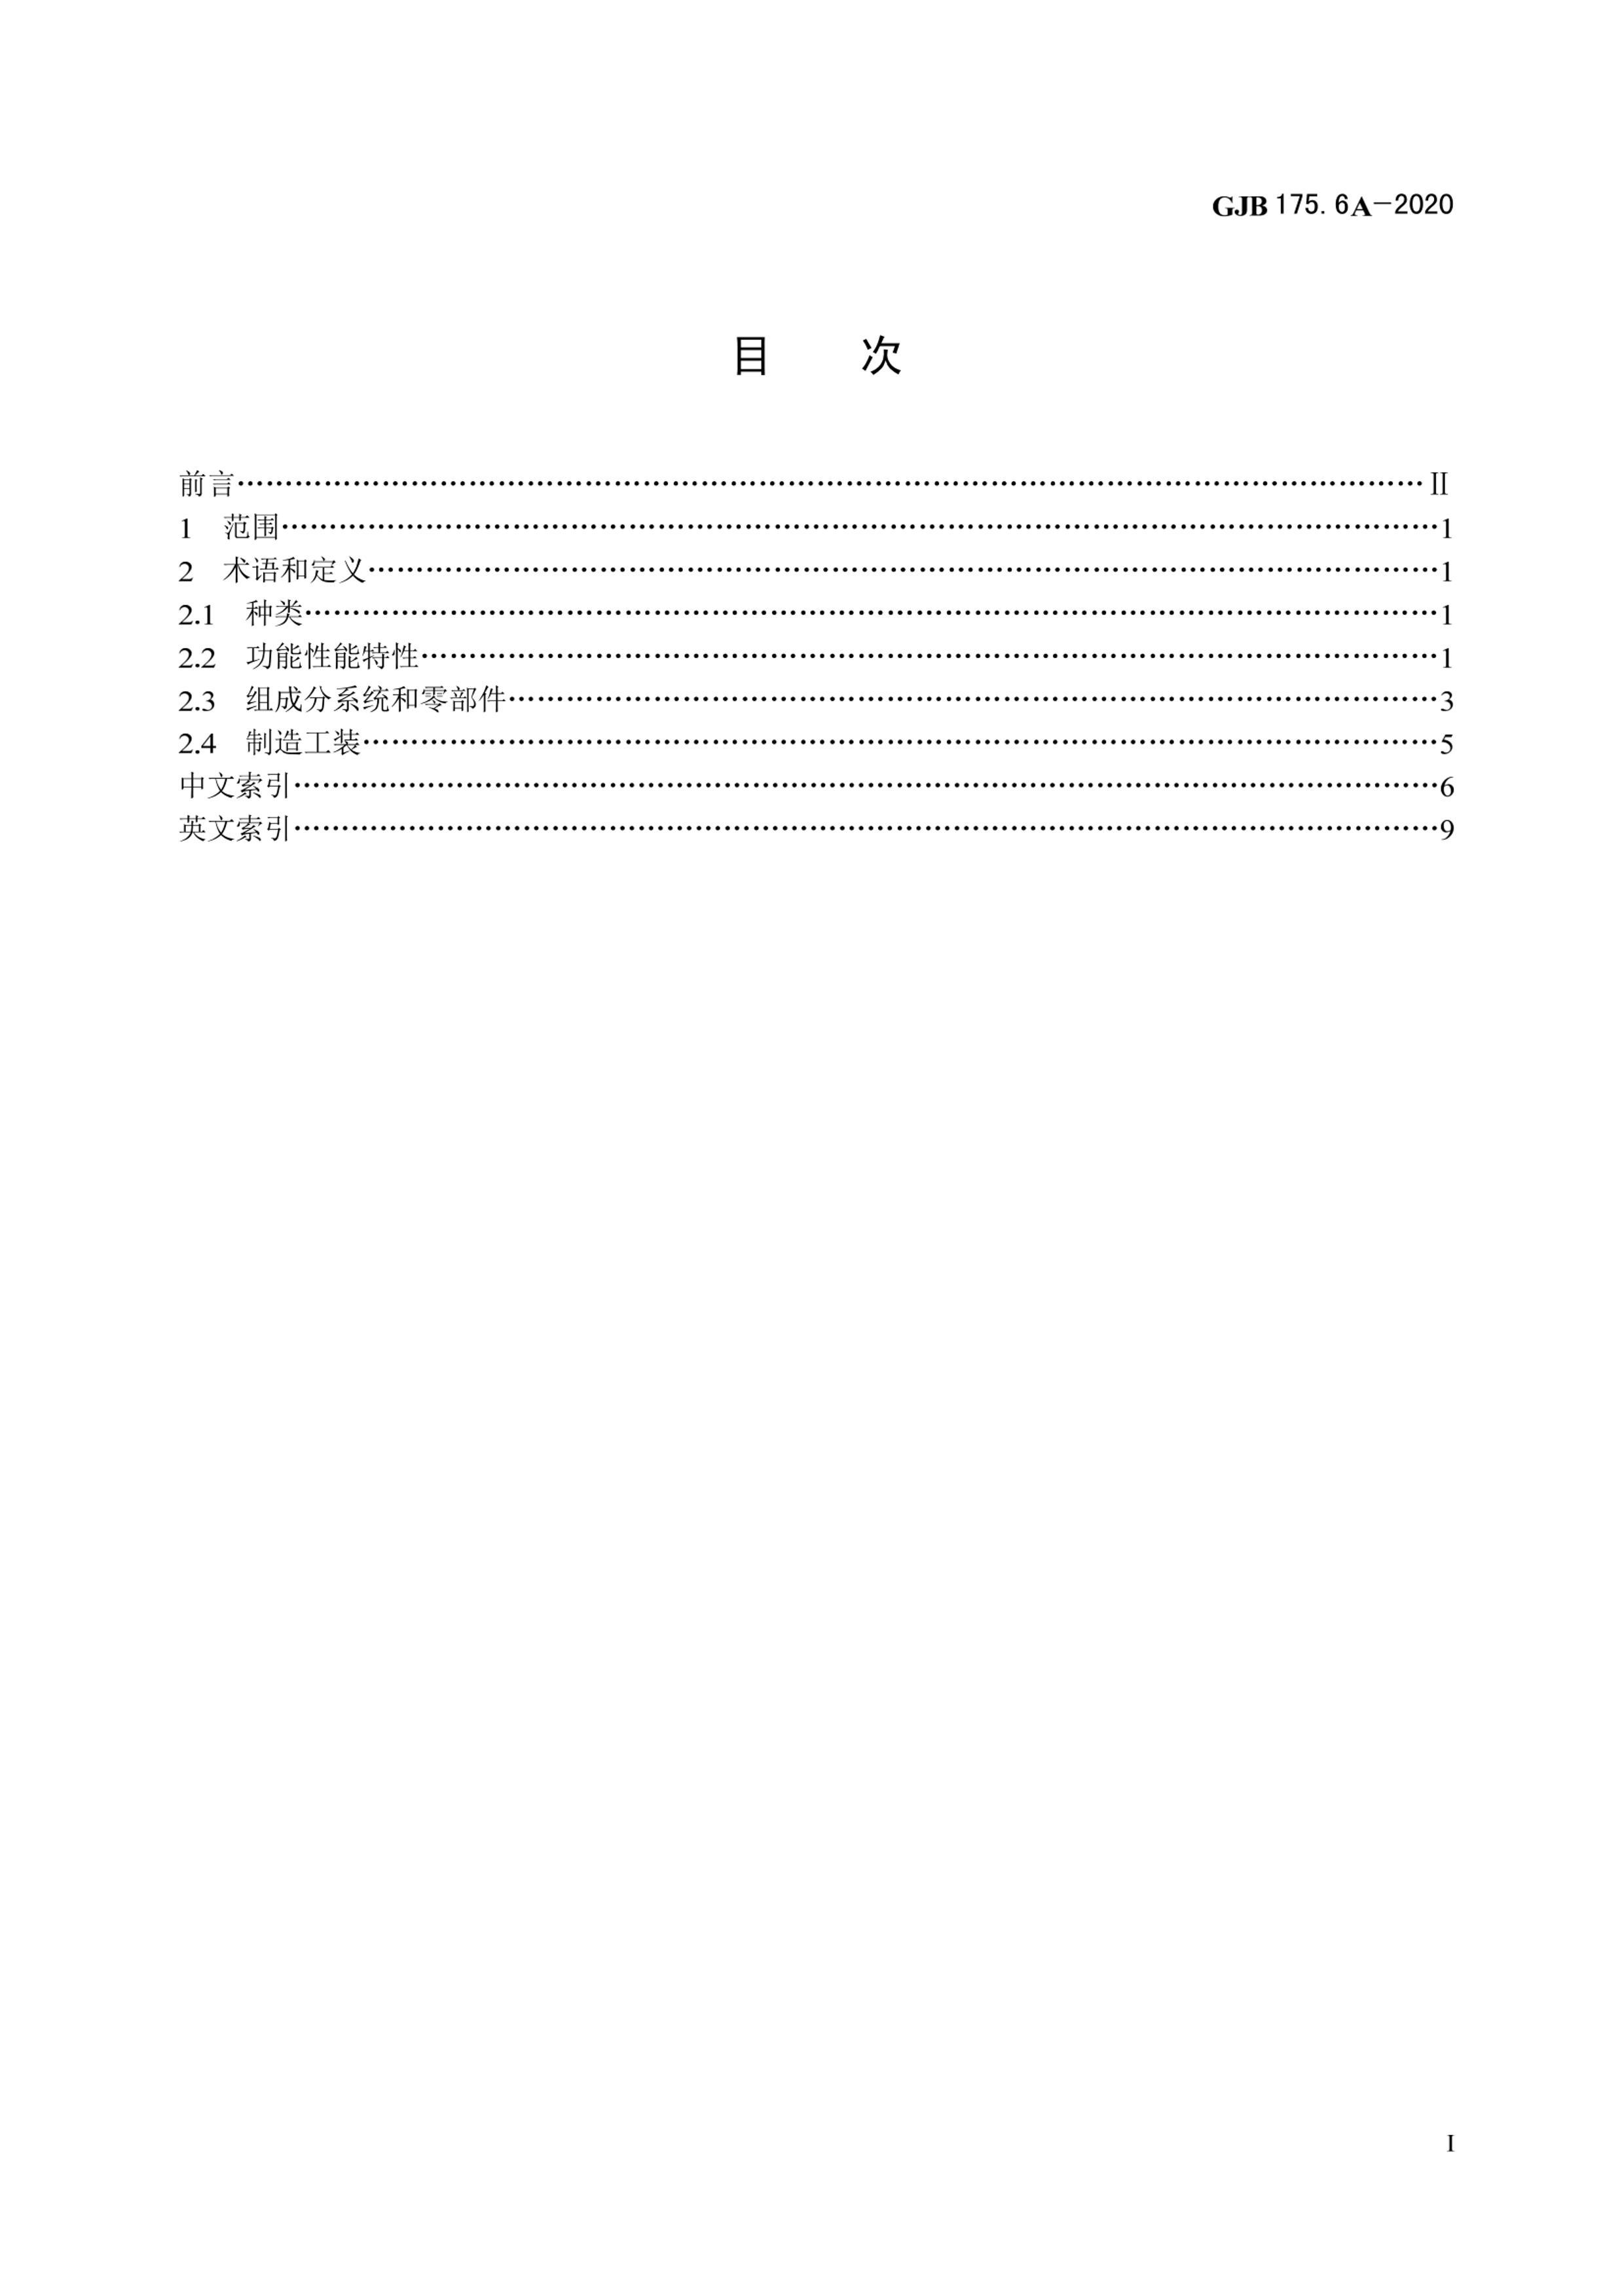 GJB 175.6A-2020.pdf2ҳ